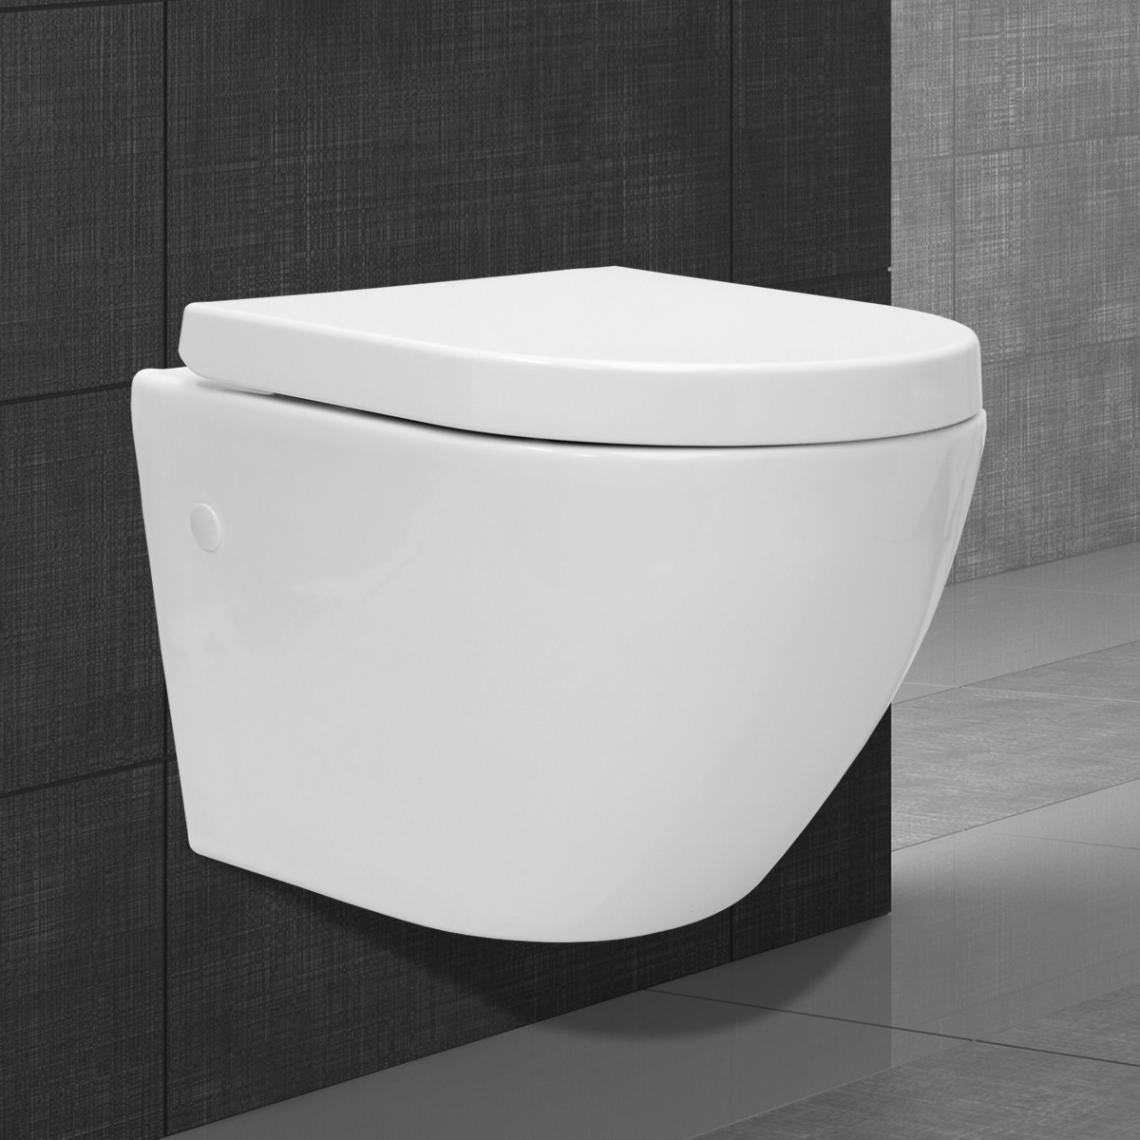 Ecd Germany - WC toilette suspendu avec cuvette siège de toilette mural blanc + kit de montage - Broyeur WC